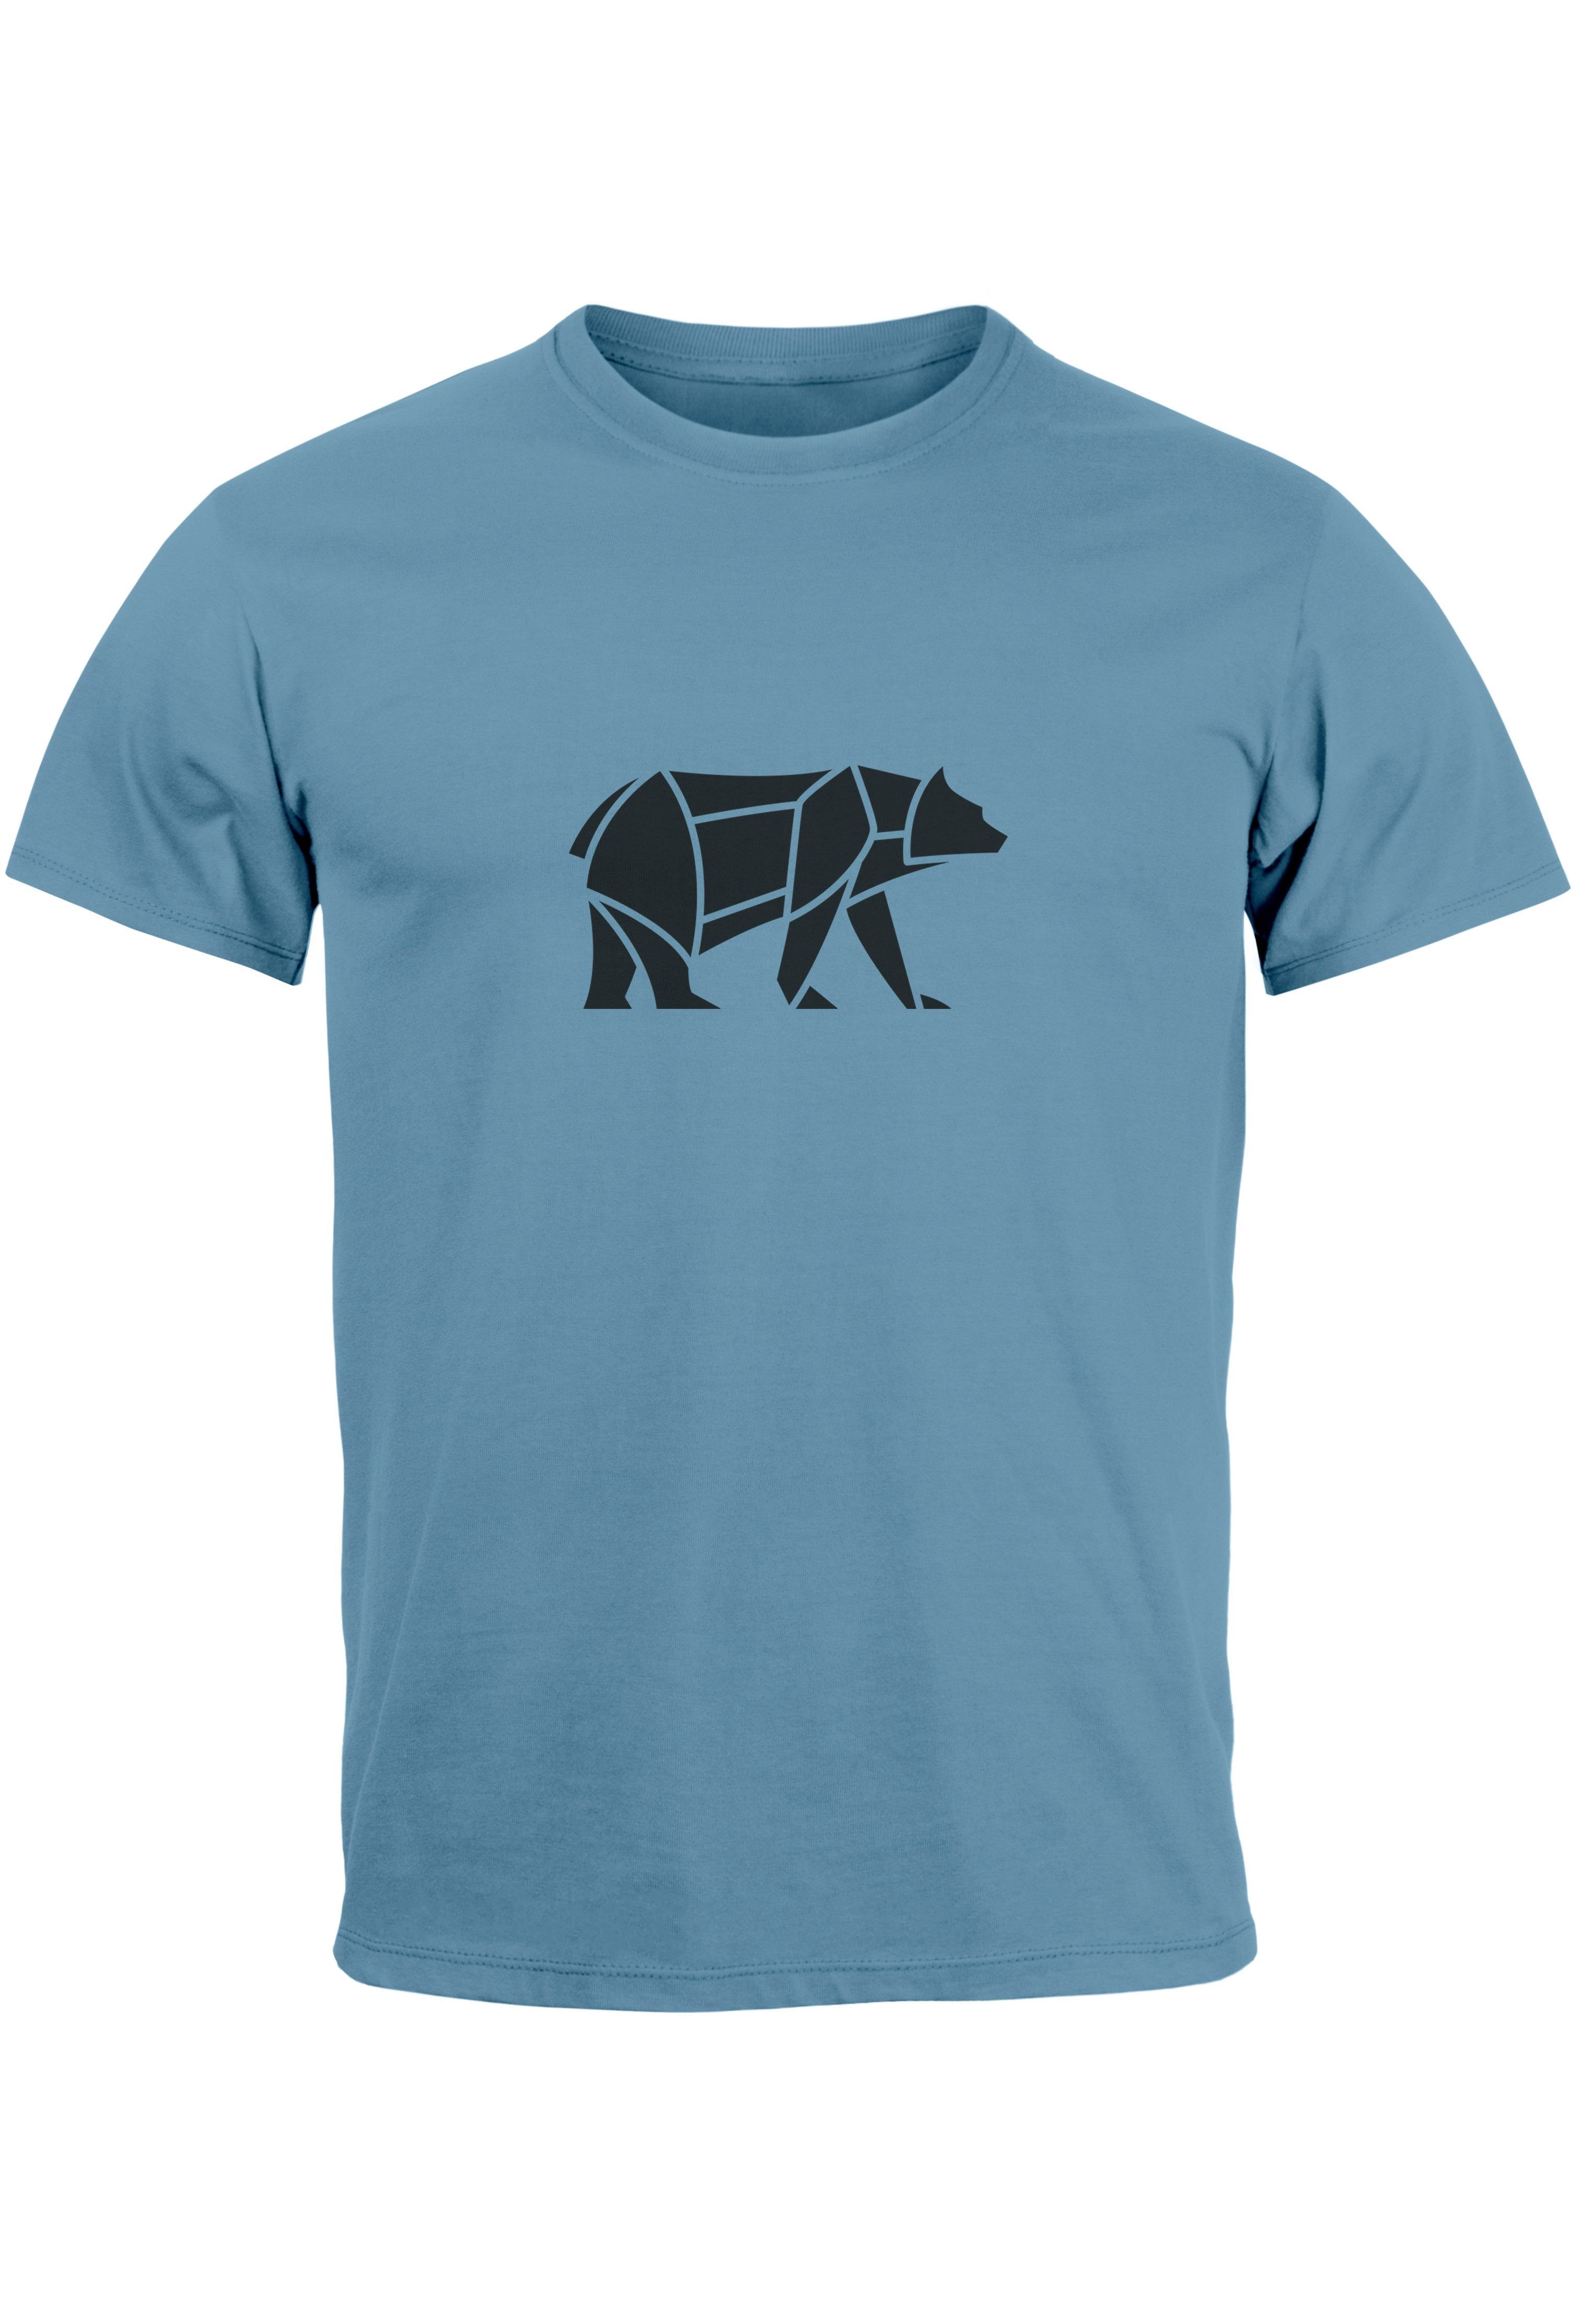 Zu erstaunlich niedrigen Preisen Neverless Print-Shirt Herren T-Shirt 1 Polygon Polygon Fashion Print Tiermotiv blau Print Outdoor Design Bear Bär mit